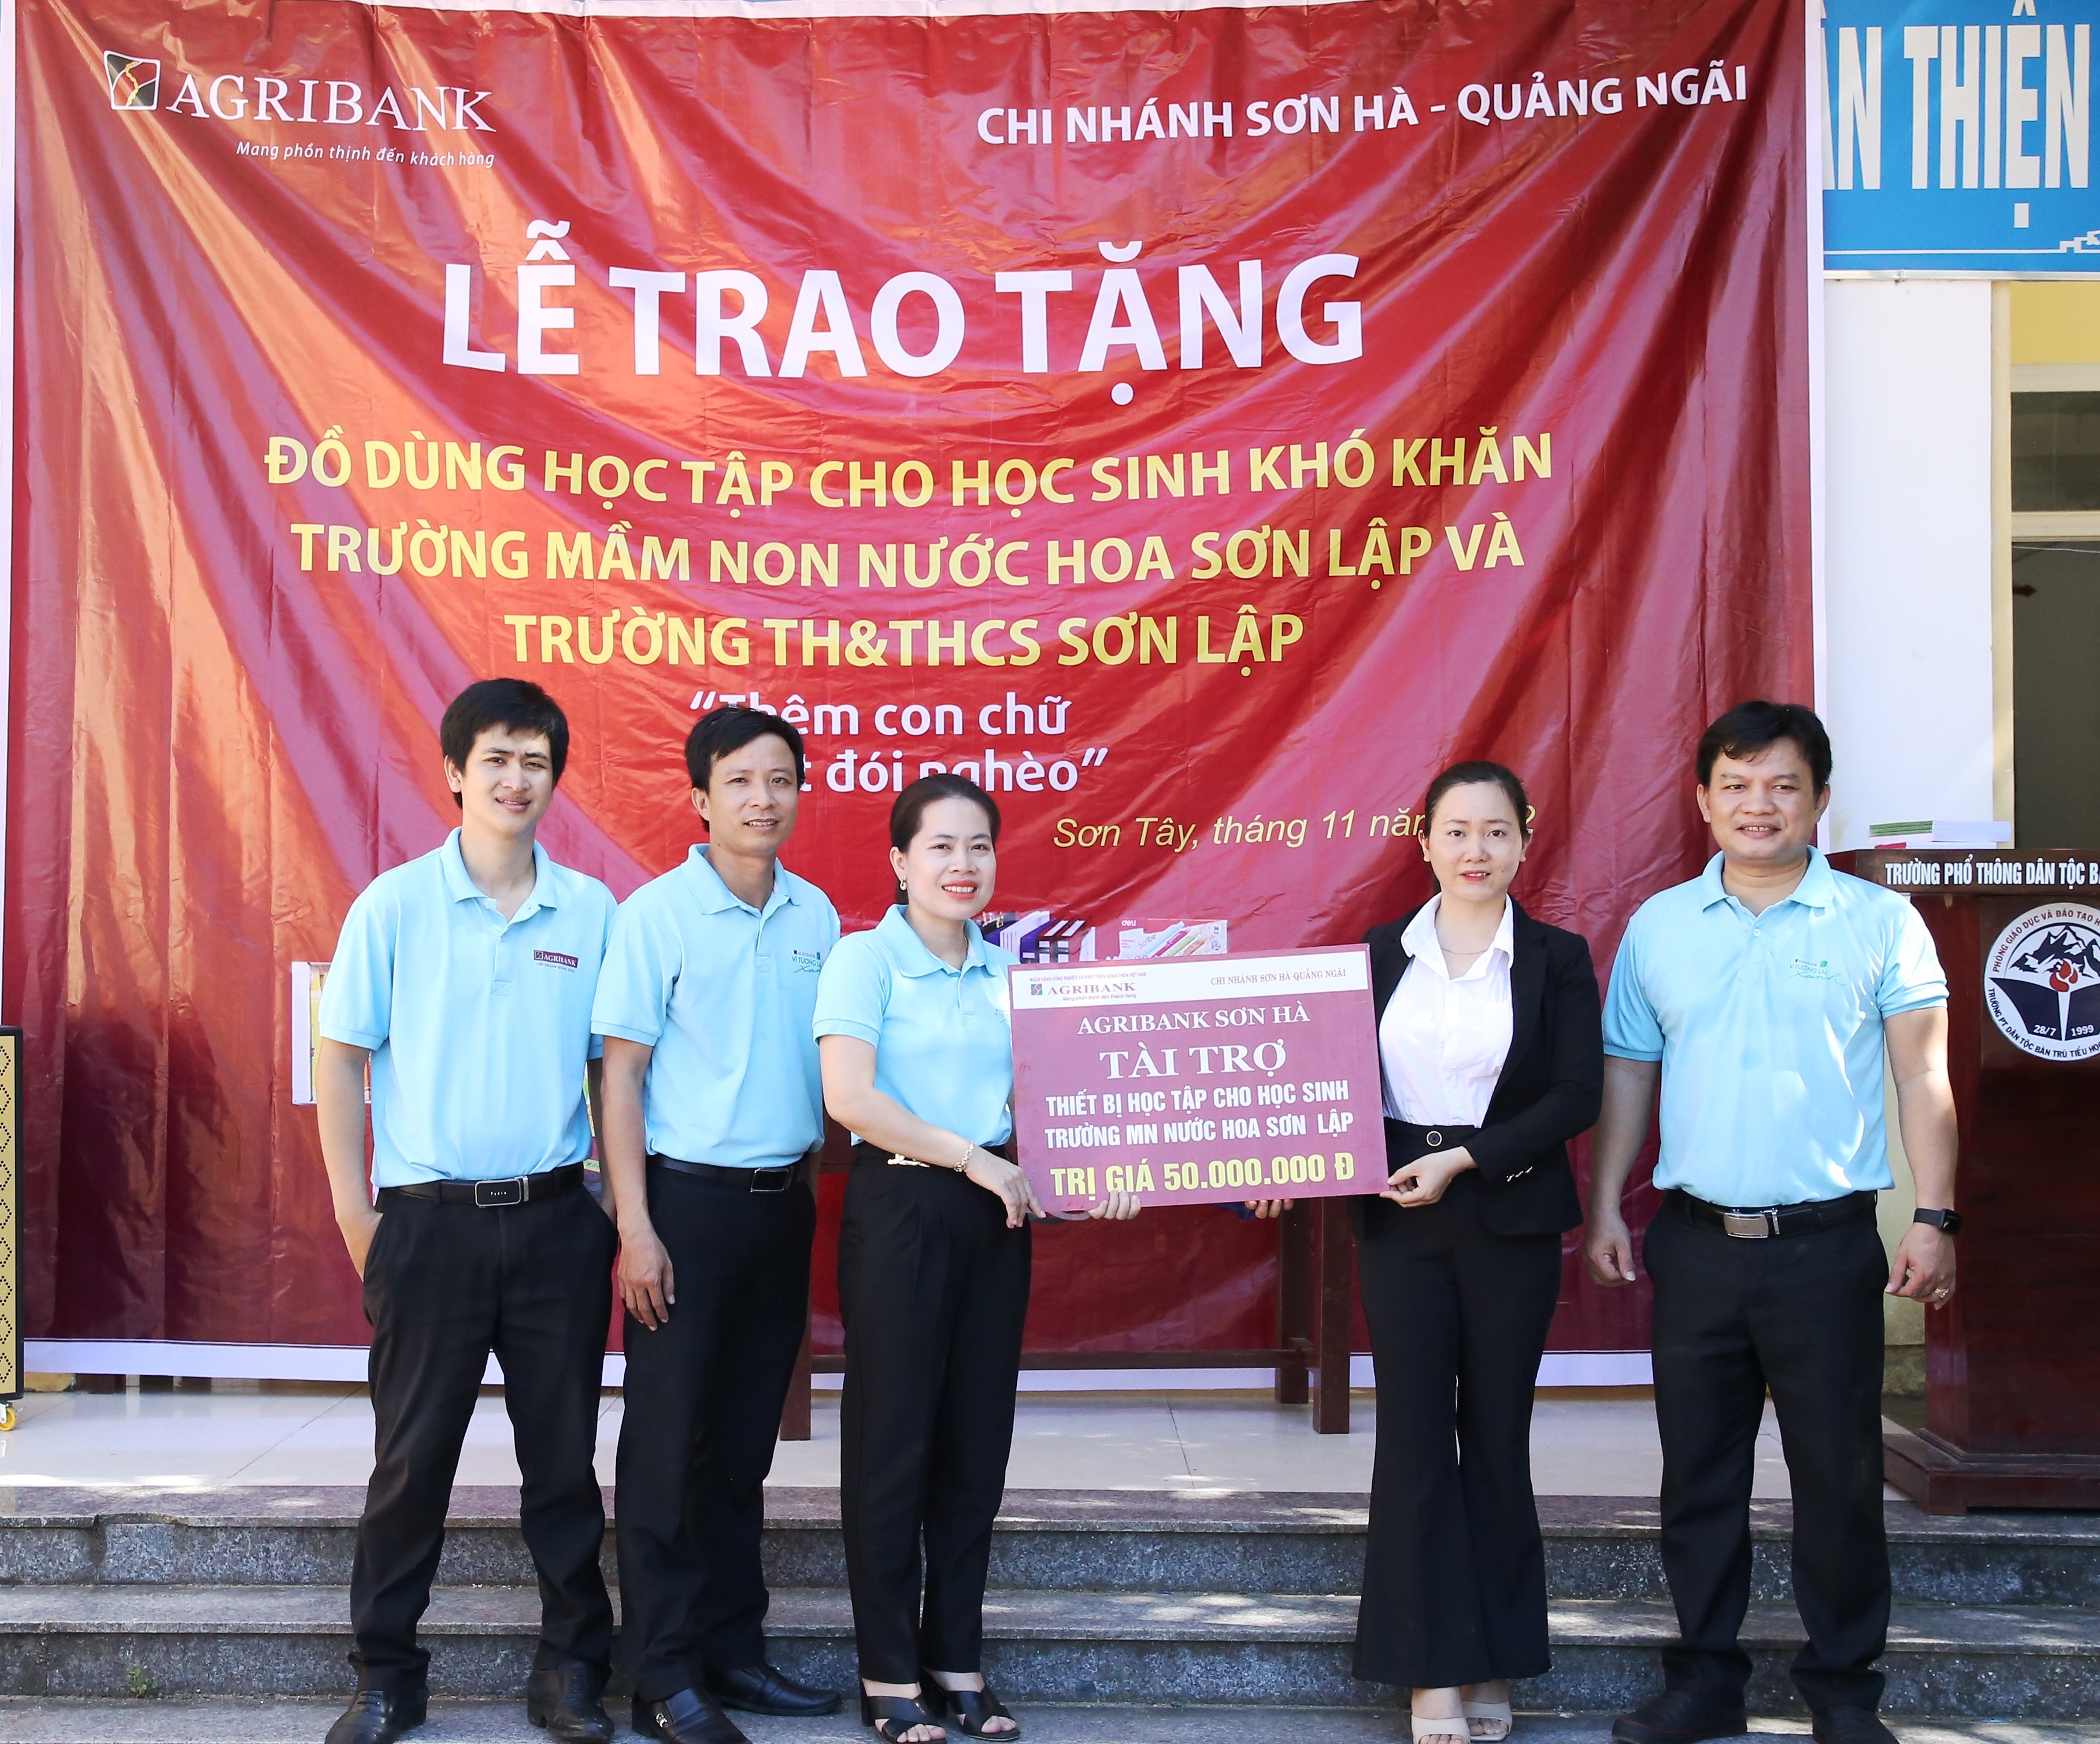 Agribank Chi nhánh huyện Sơn Hà – Quảng Ngãi: Trao quà cho học sinh...